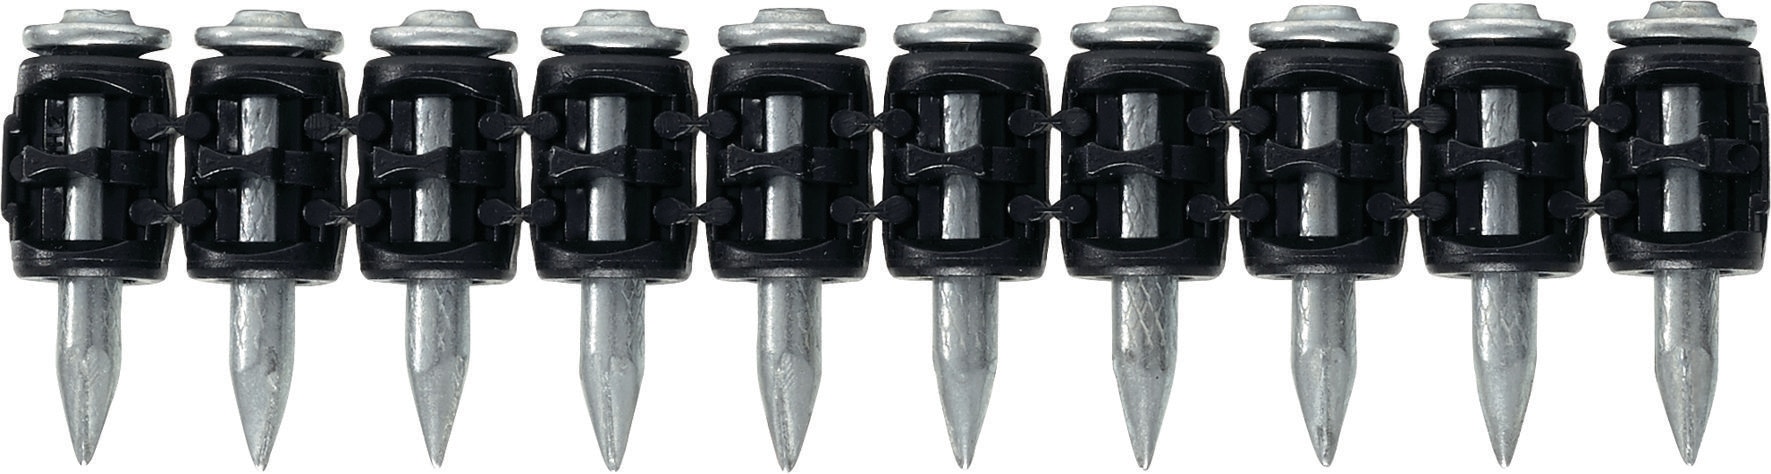 X-C B3 MX Concrete nails (collated) - Nails - Hilti Canada